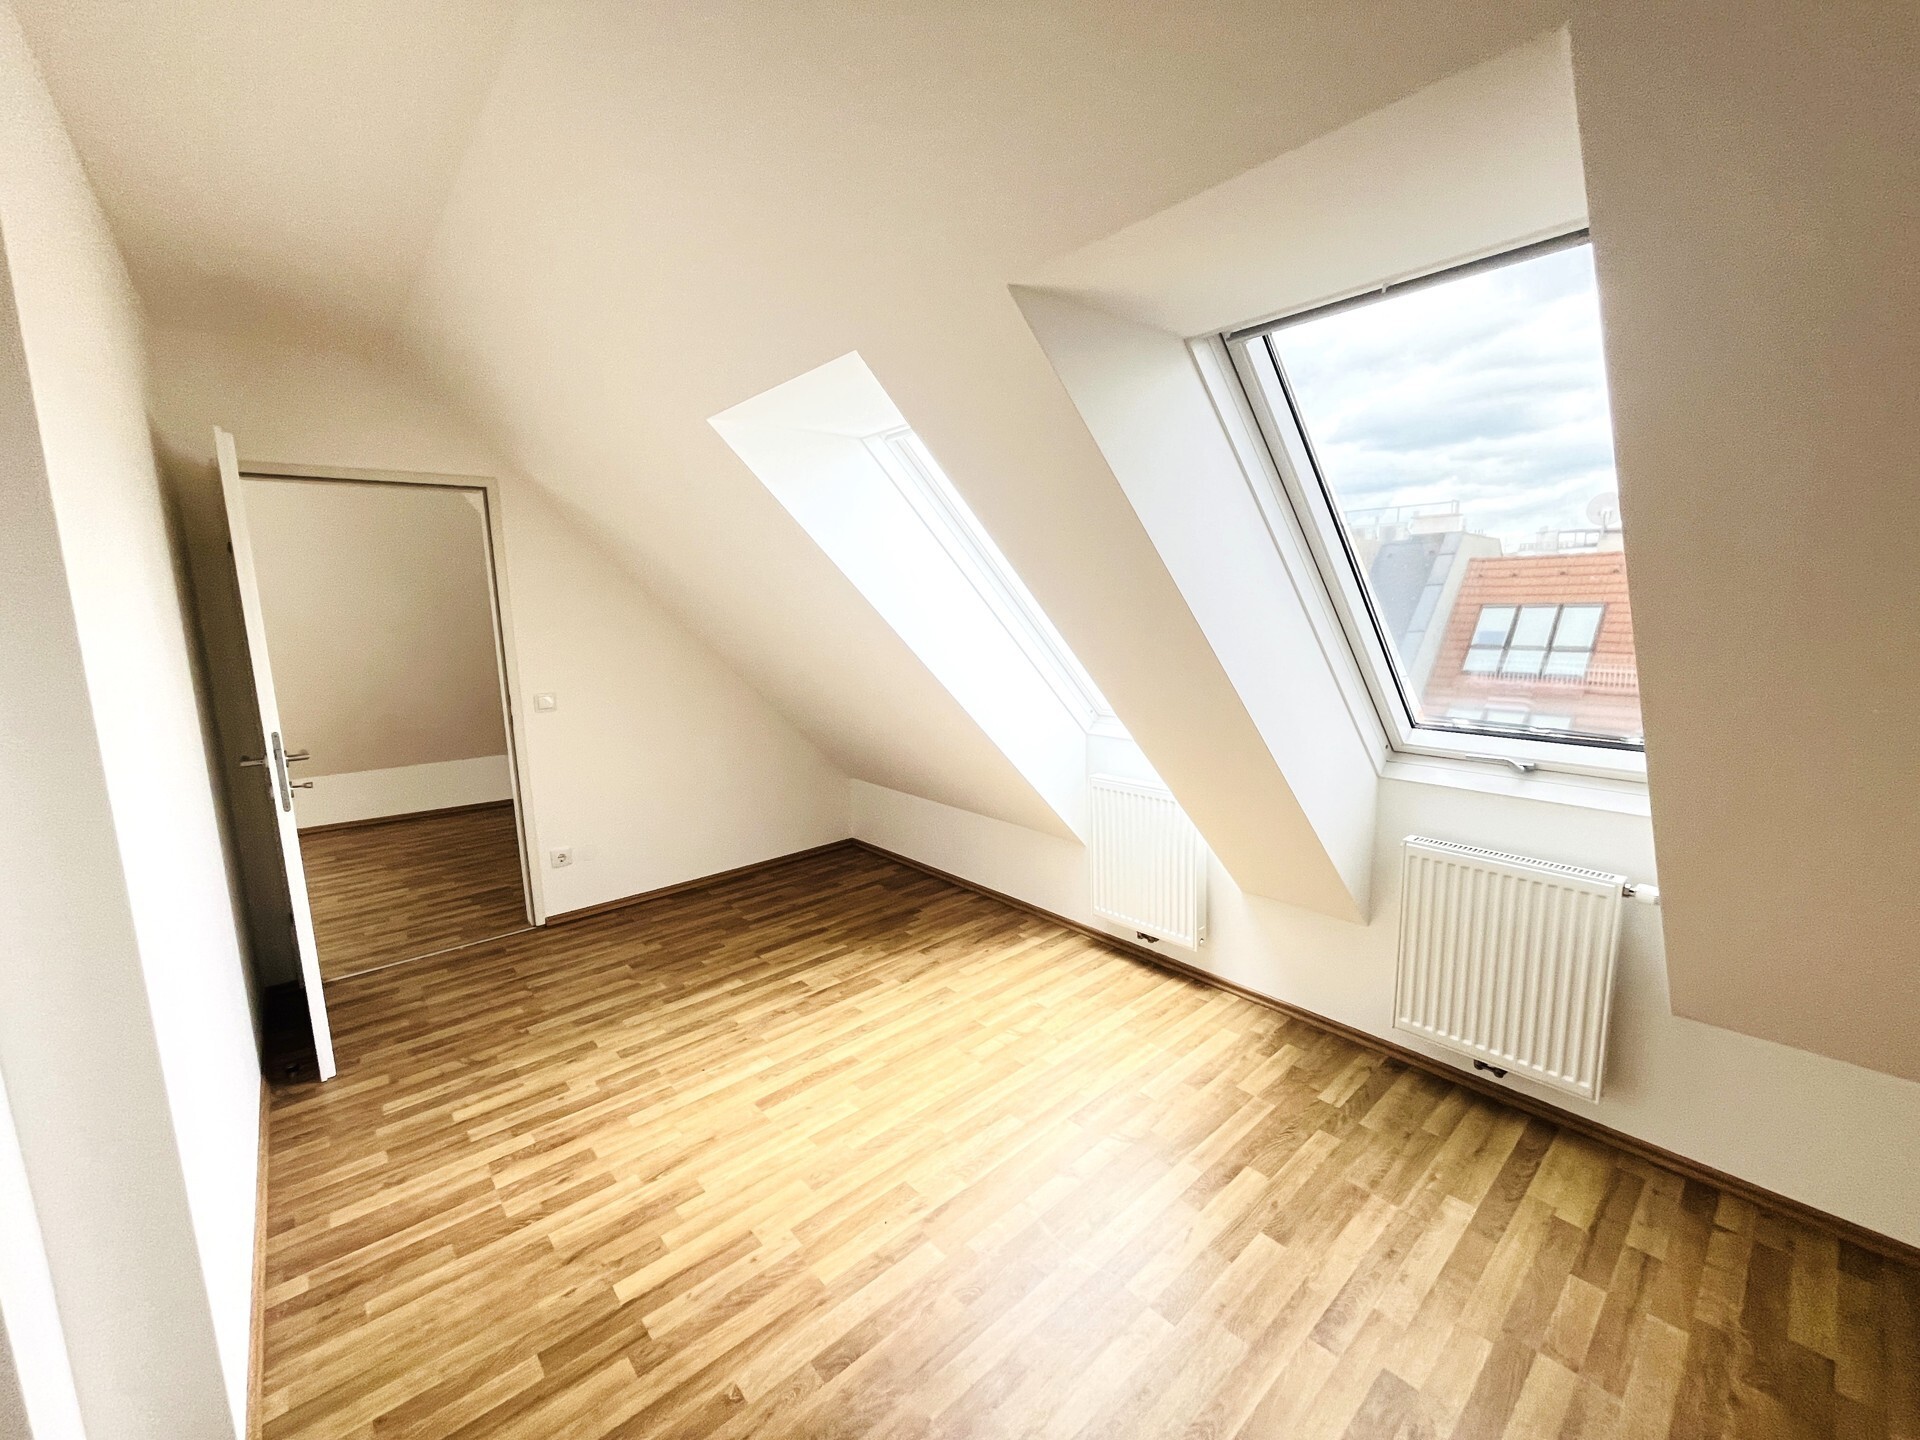 Zentrale 3-Zimmer-Dachgeschoßwohnung mit zwei Terrassen und Einbauküche - zu kaufen in 1150 Wien